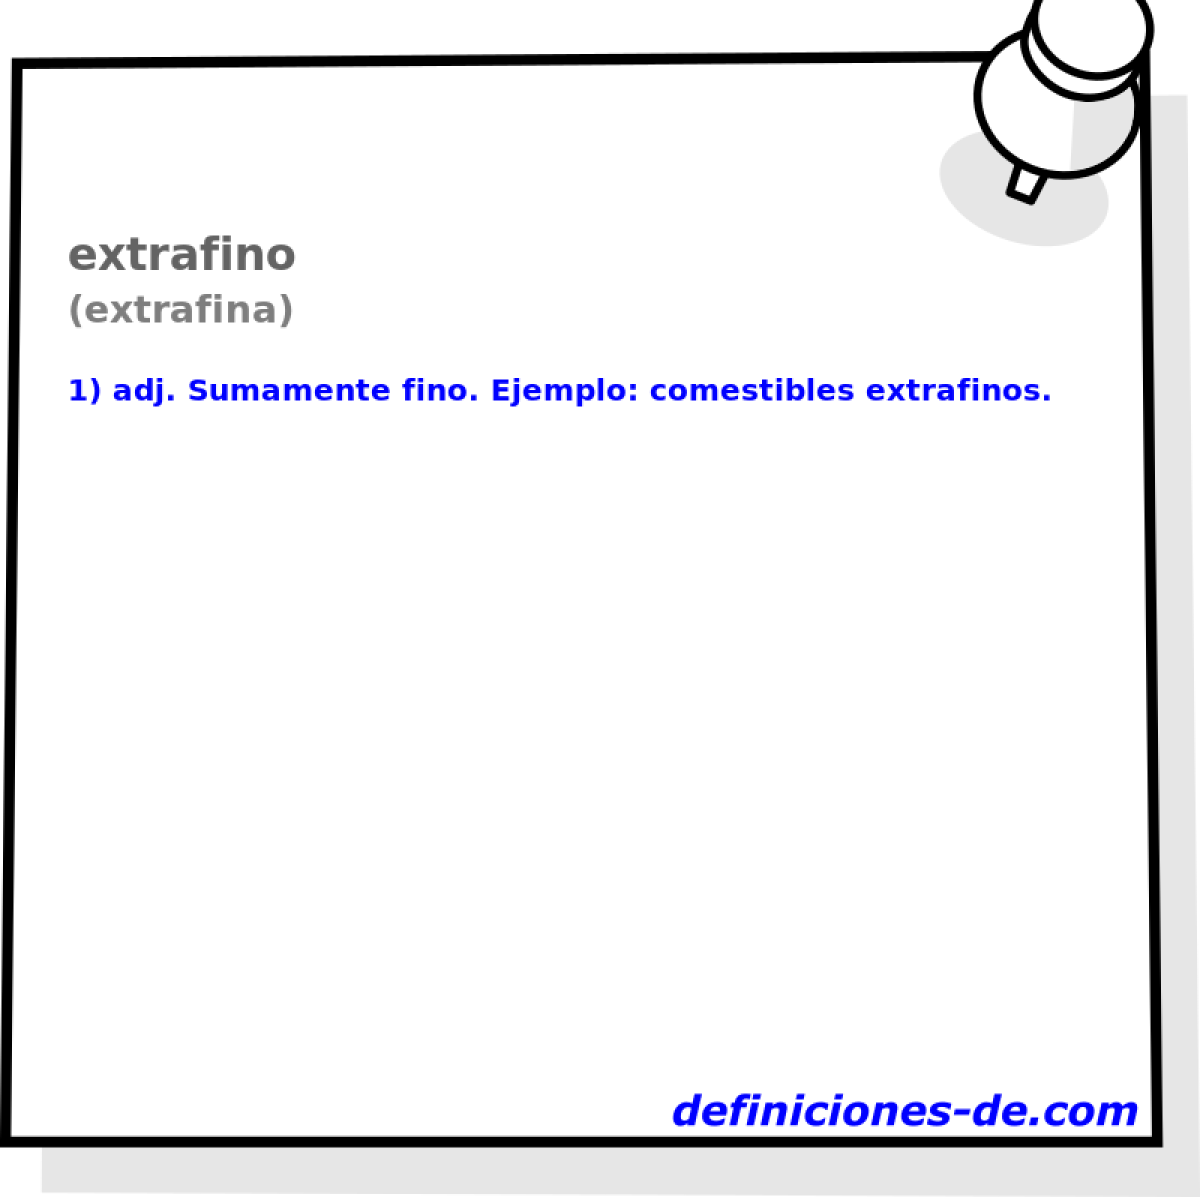 extrafino (extrafina)